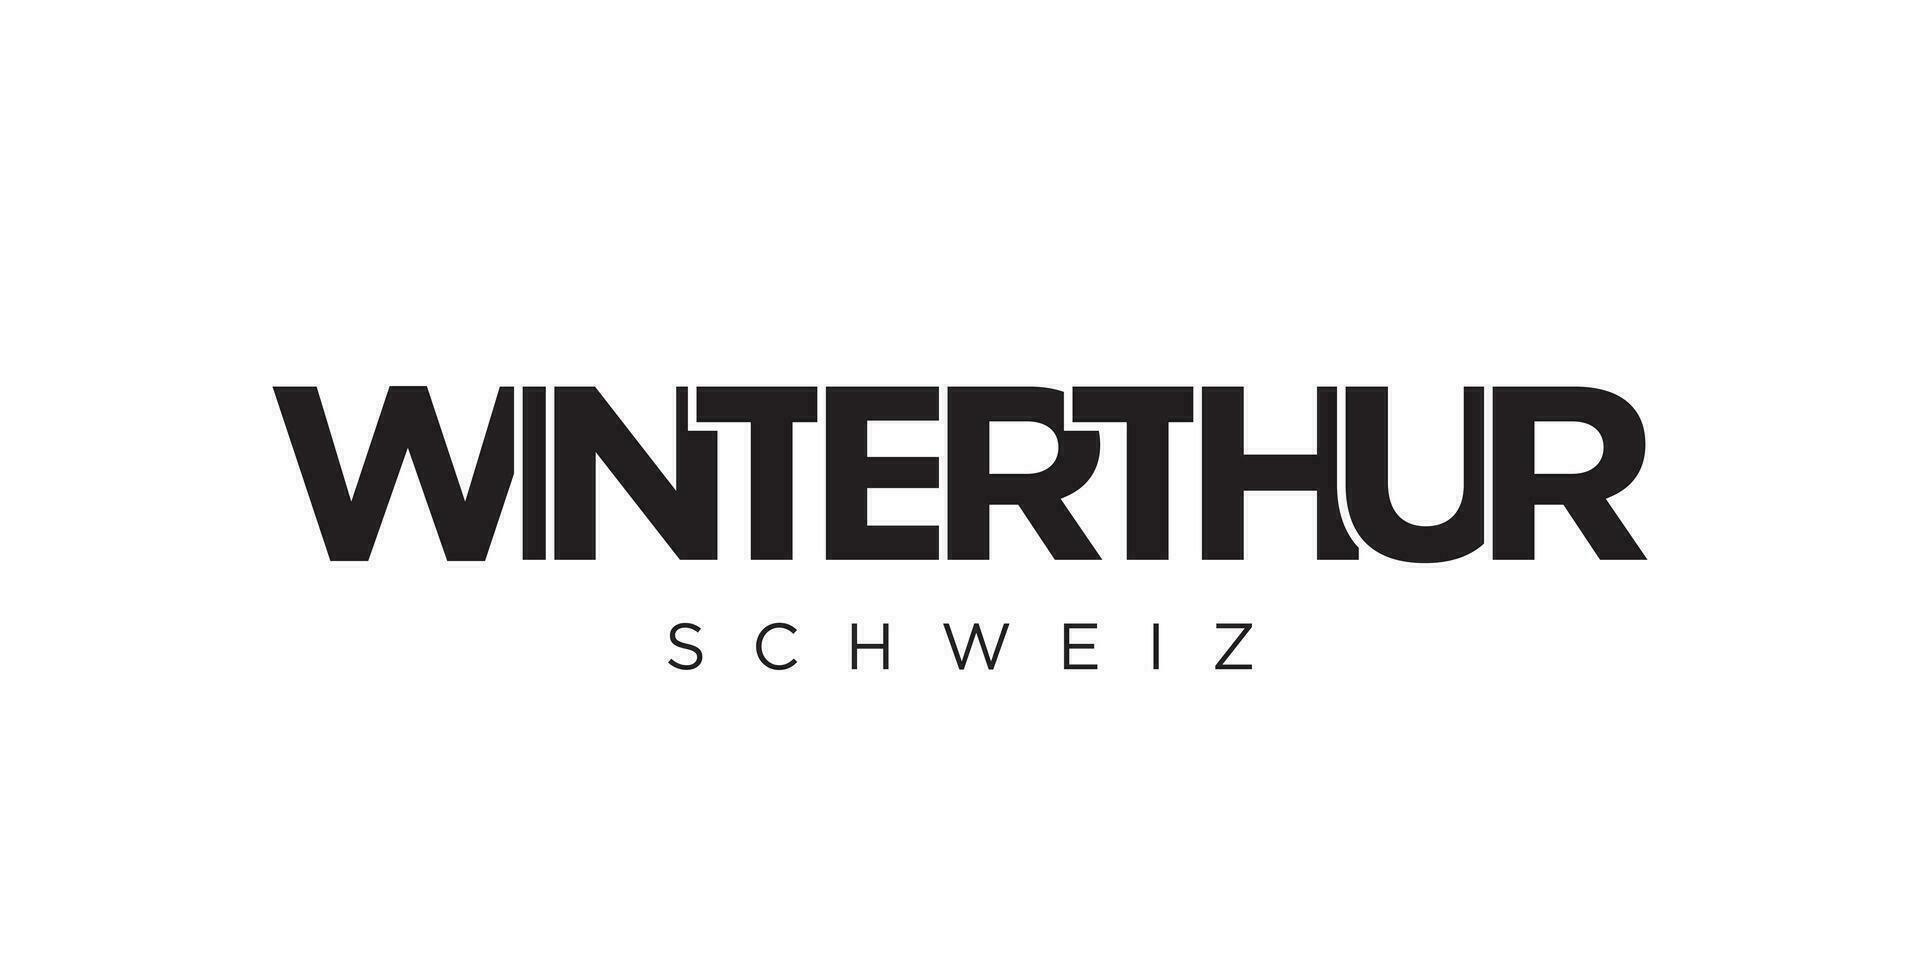 Winterthur dans le Suisse emblème. le conception Caractéristiques une géométrique style, vecteur illustration avec audacieux typographie dans une moderne Police de caractère. le graphique slogan caractères.